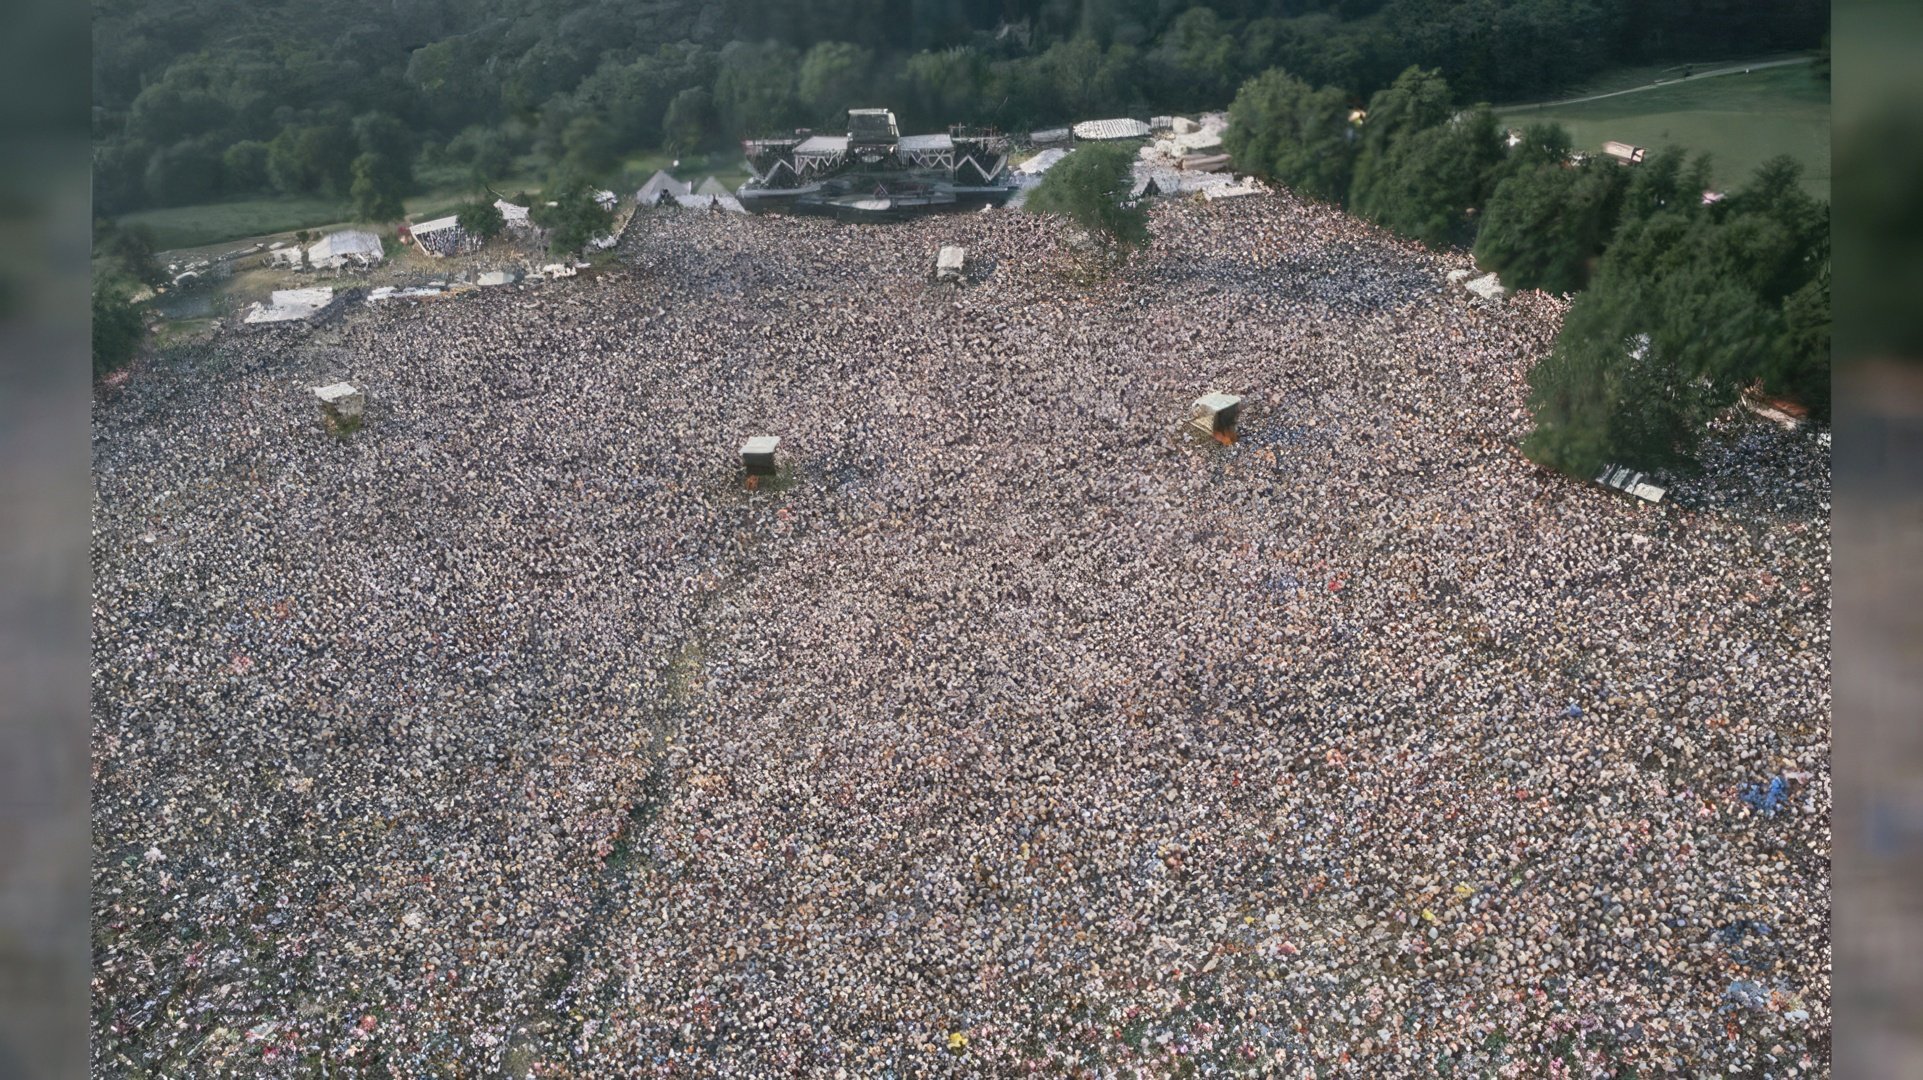 Queen's last concert with Freddie